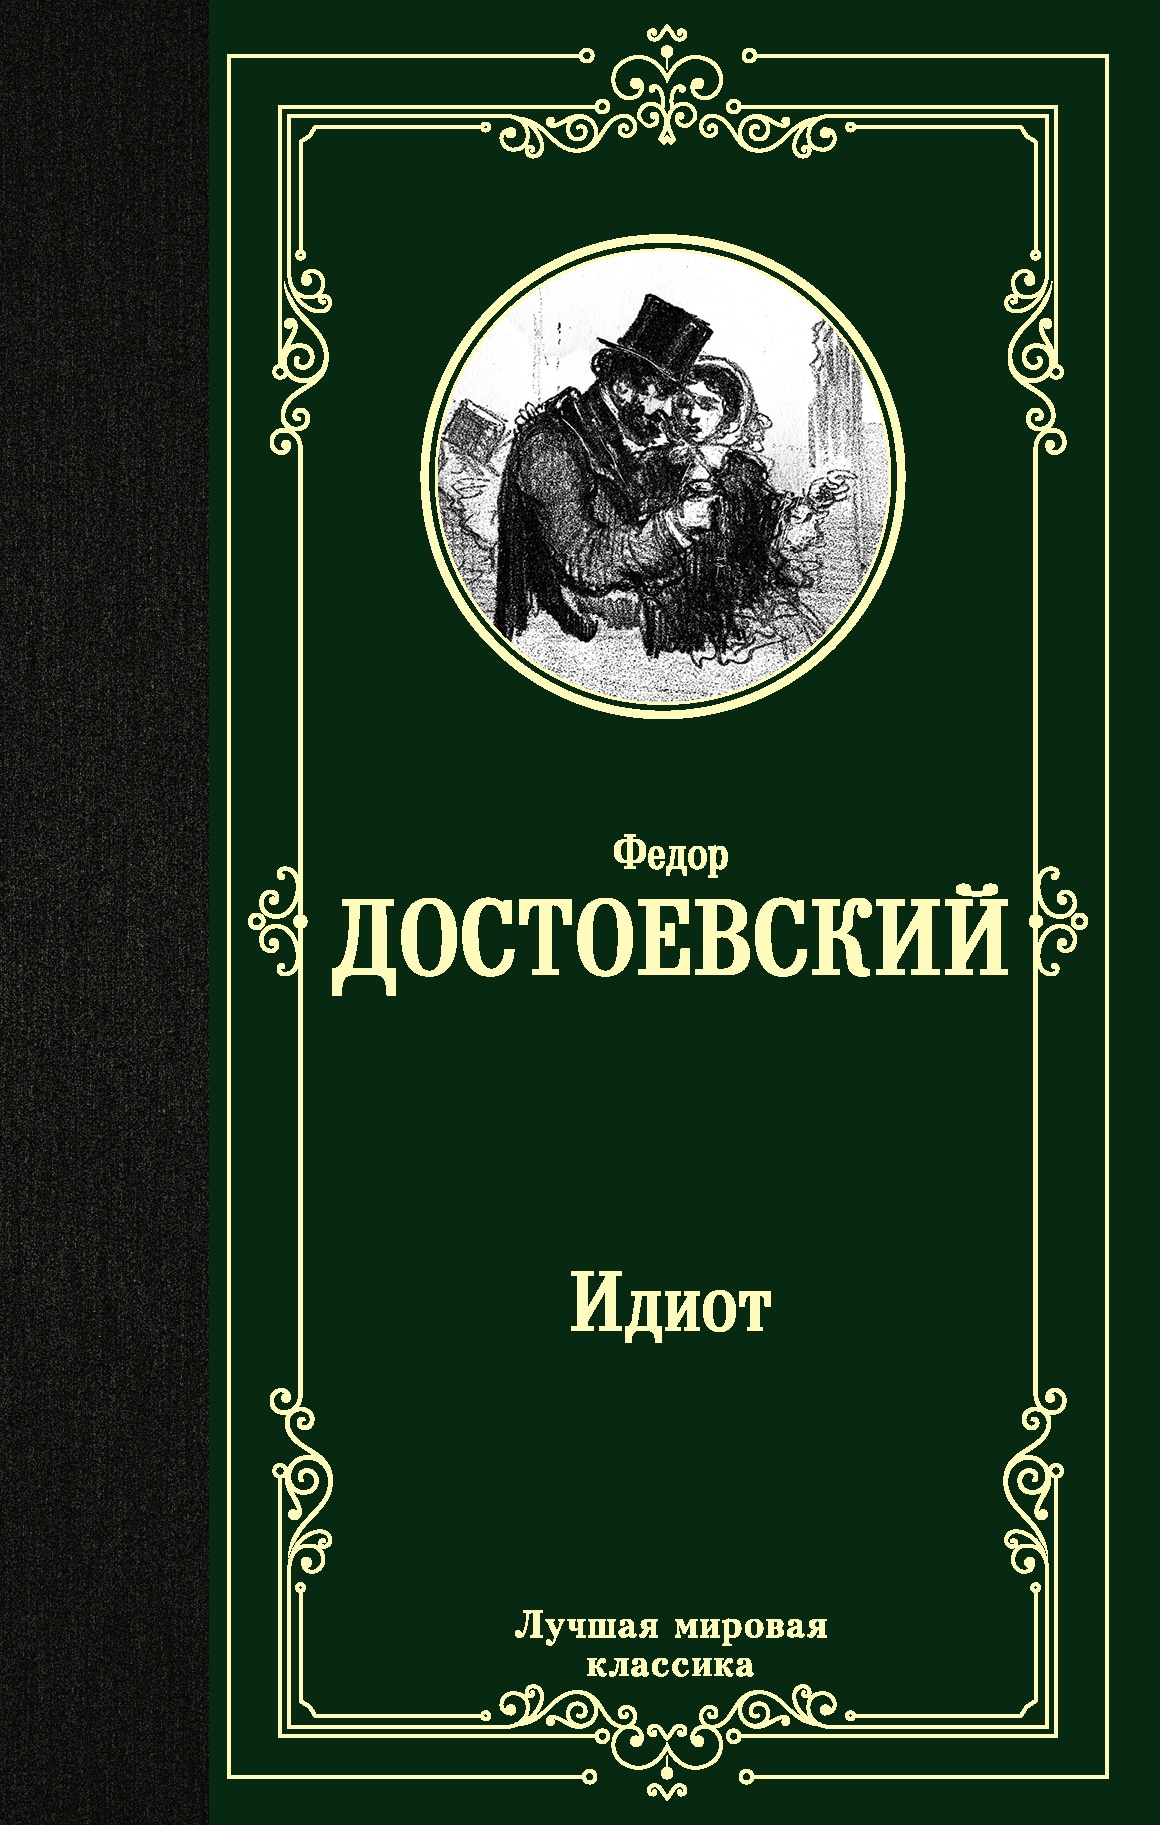 Книга «Идиот» Федор Достоевский — 12 октября 2021 г.